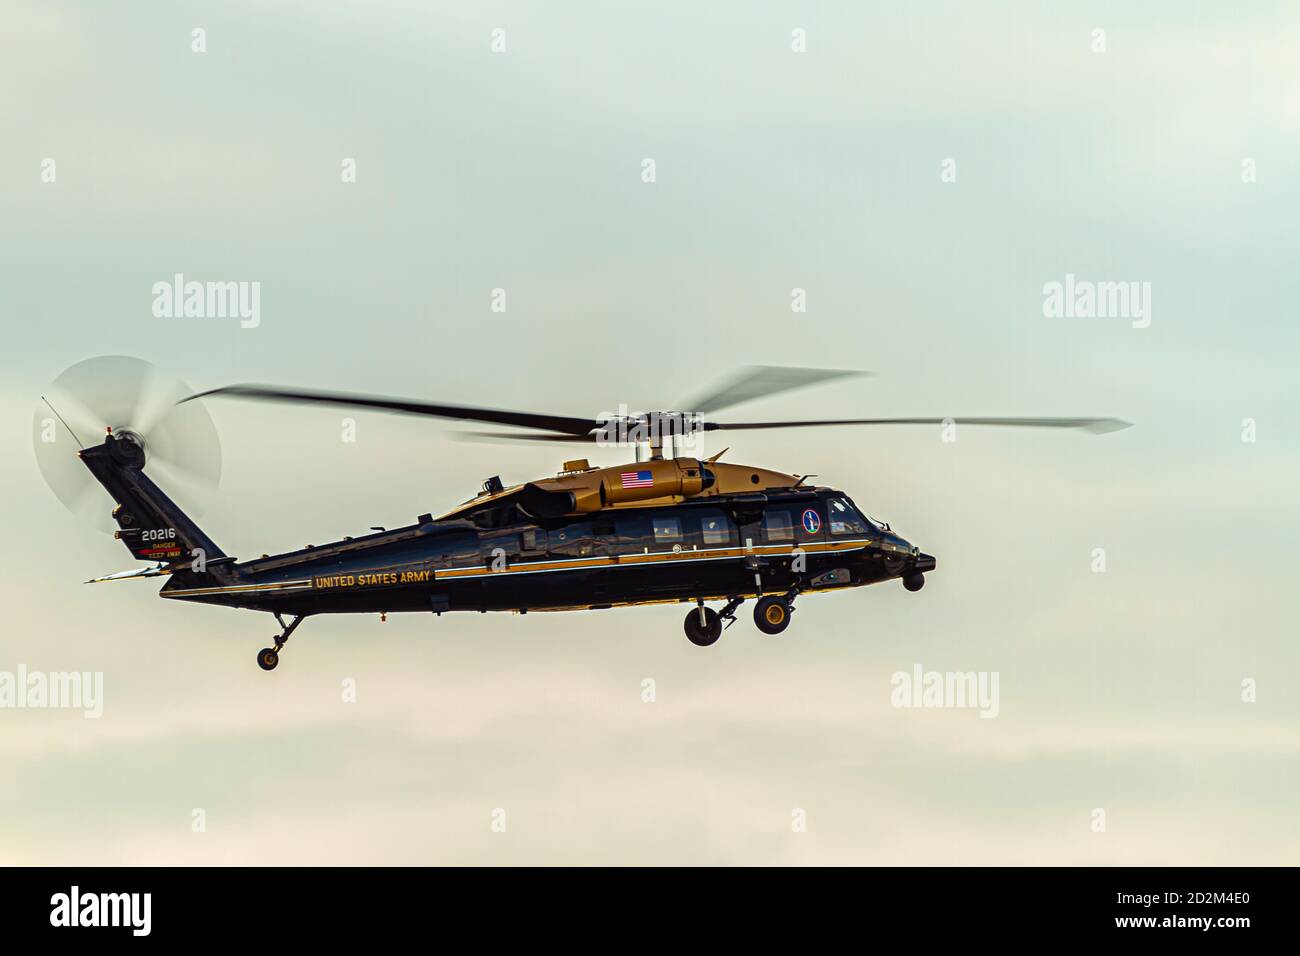 Washington DC, USA 10/03/2020: Un Sikorsky VH-60M Golden TOP Black Hawk (aggiornato UH-60M) elicottero a quattro pale appartenente all'esercito degli Stati Uniti è in t Foto Stock